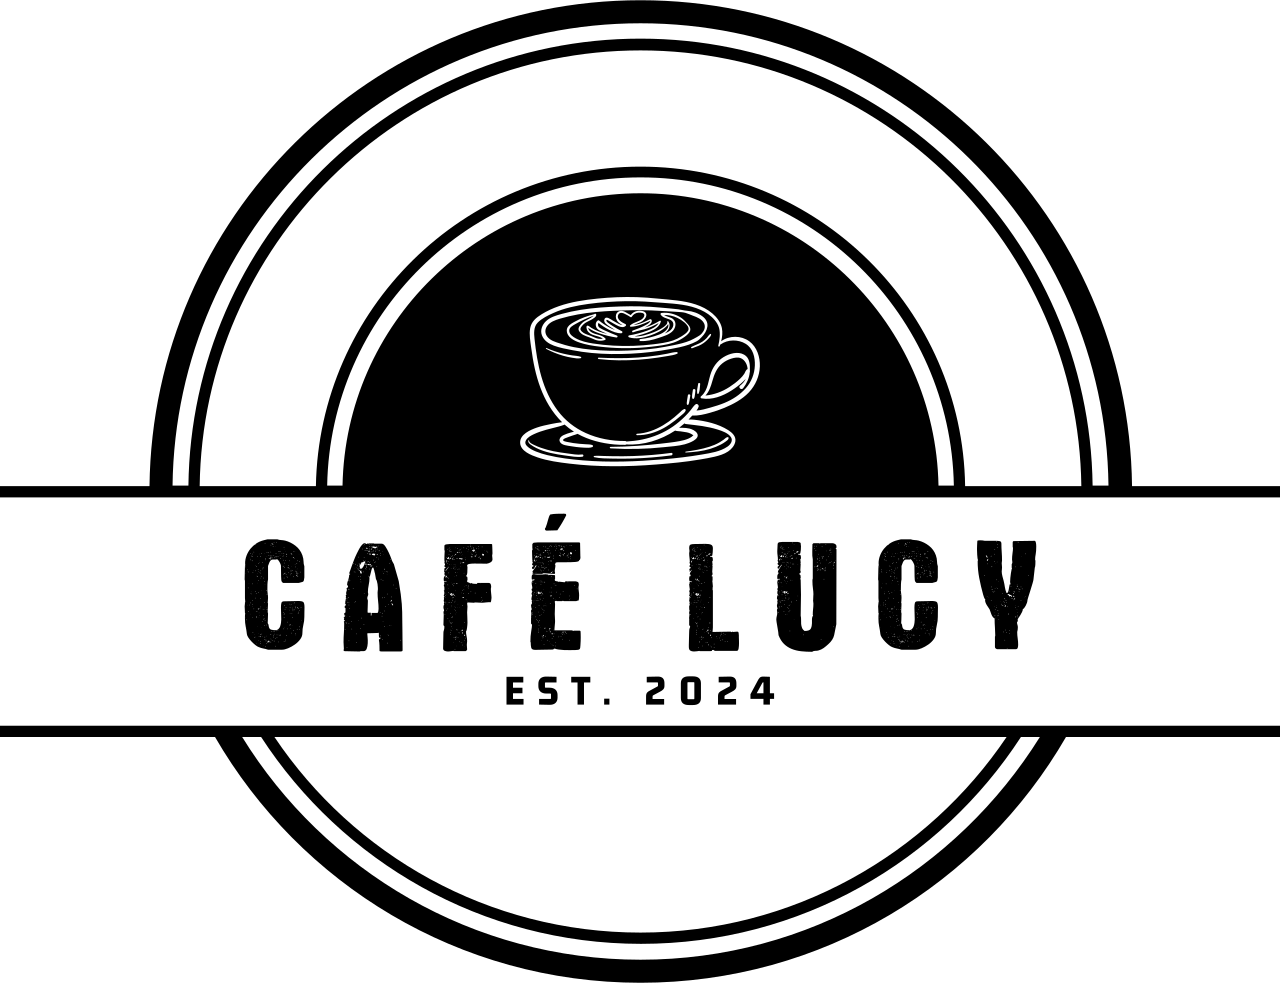 CAFÉ LUCY's logo